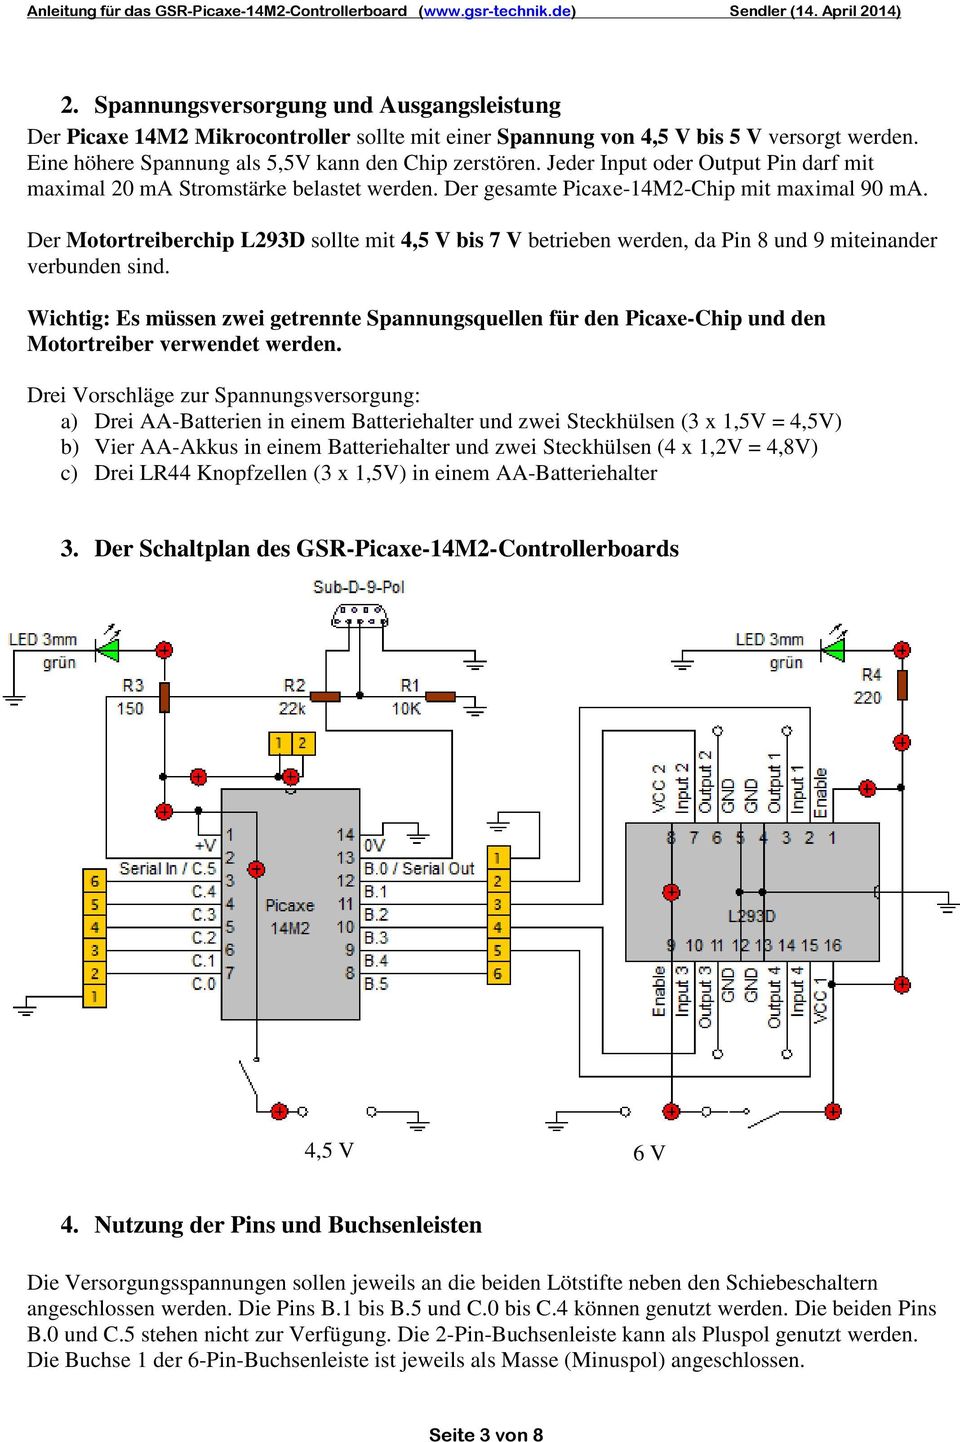 Der Motortreiberchip L293D sollte mit 4,5 V bis 7 V betrieben werden, da Pin 8 und 9 miteinander verbunden sind.